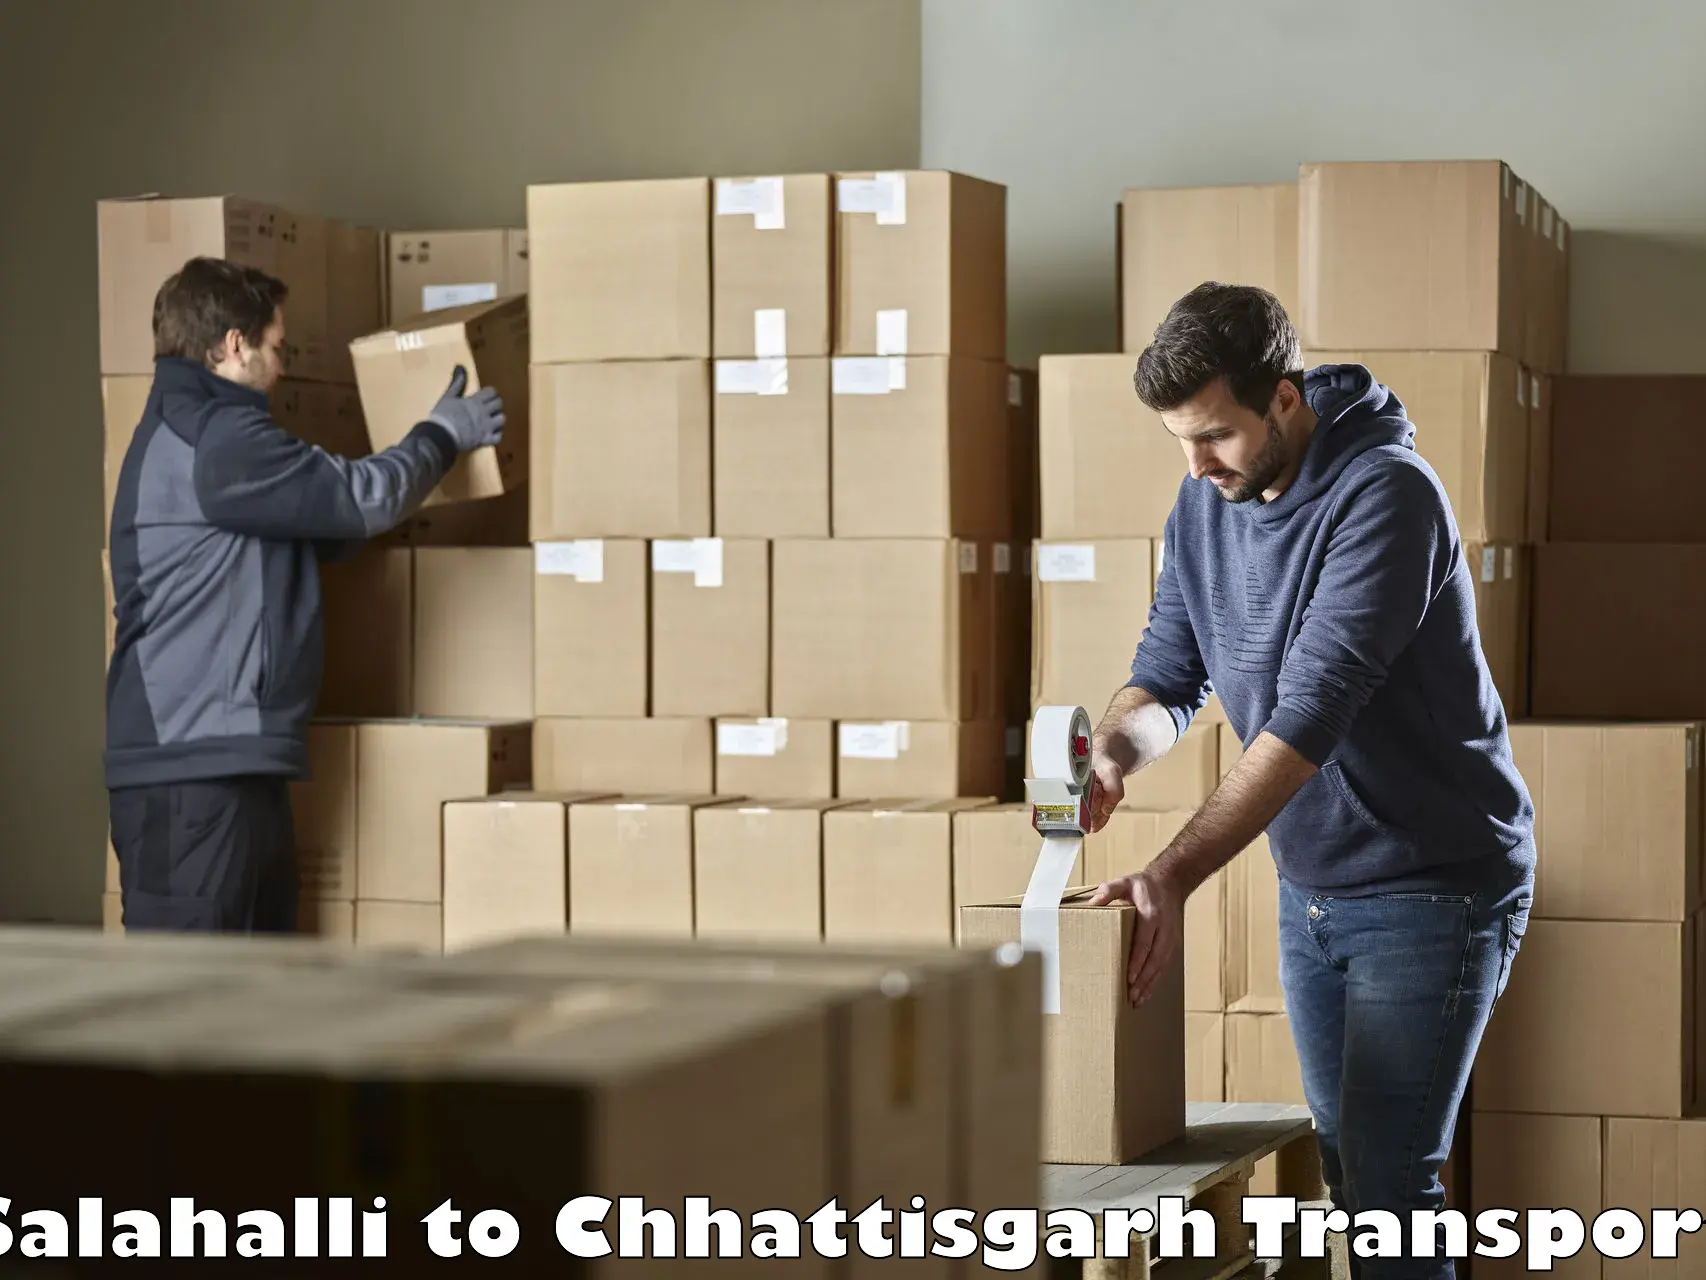 Part load transport service in India Salahalli to Ramanujganj